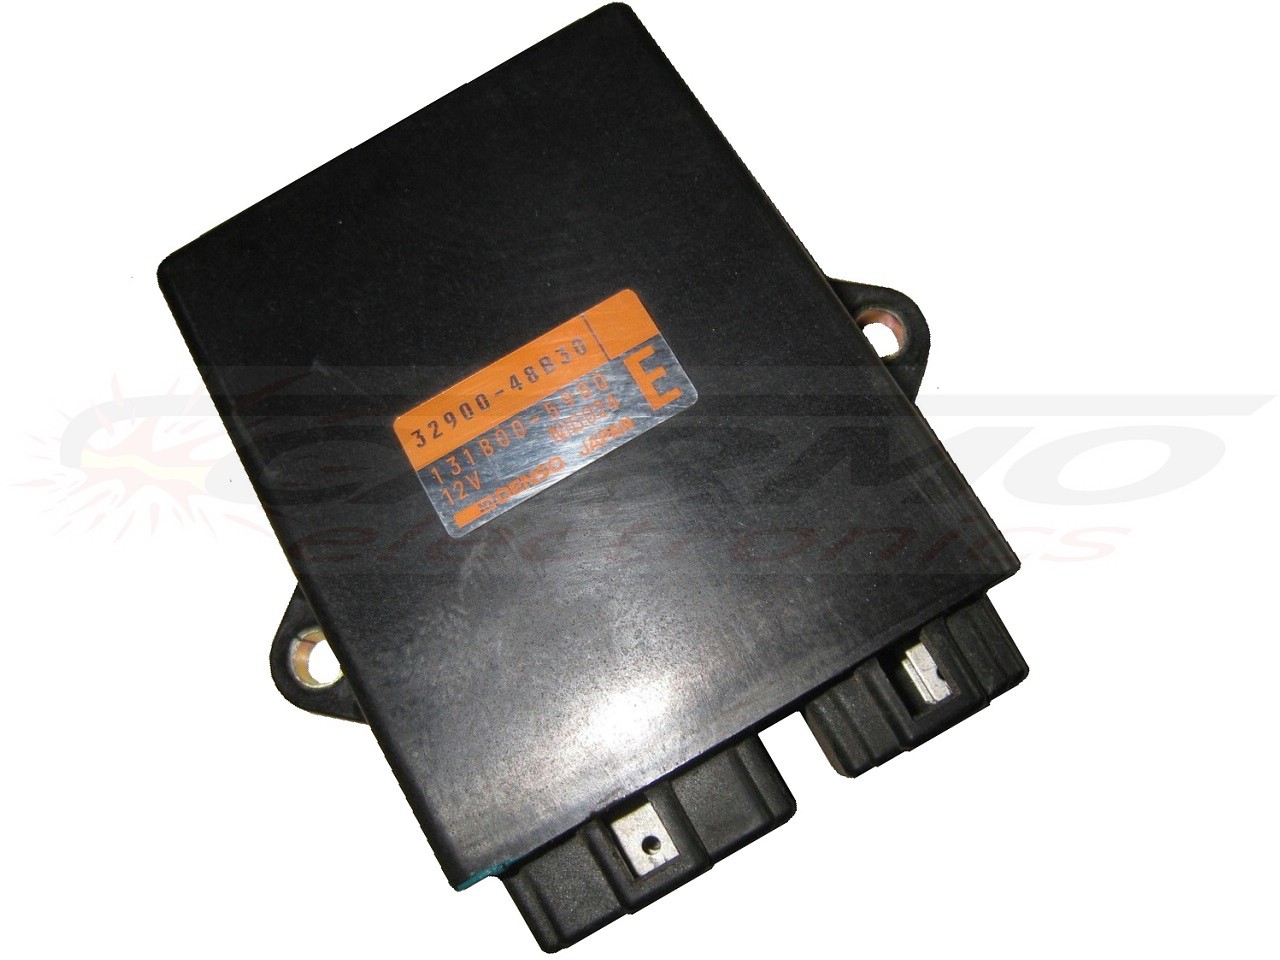 GSX1100 Katana igniter ignition module CDI TCI Box (32900-48B30, 131800-5980)